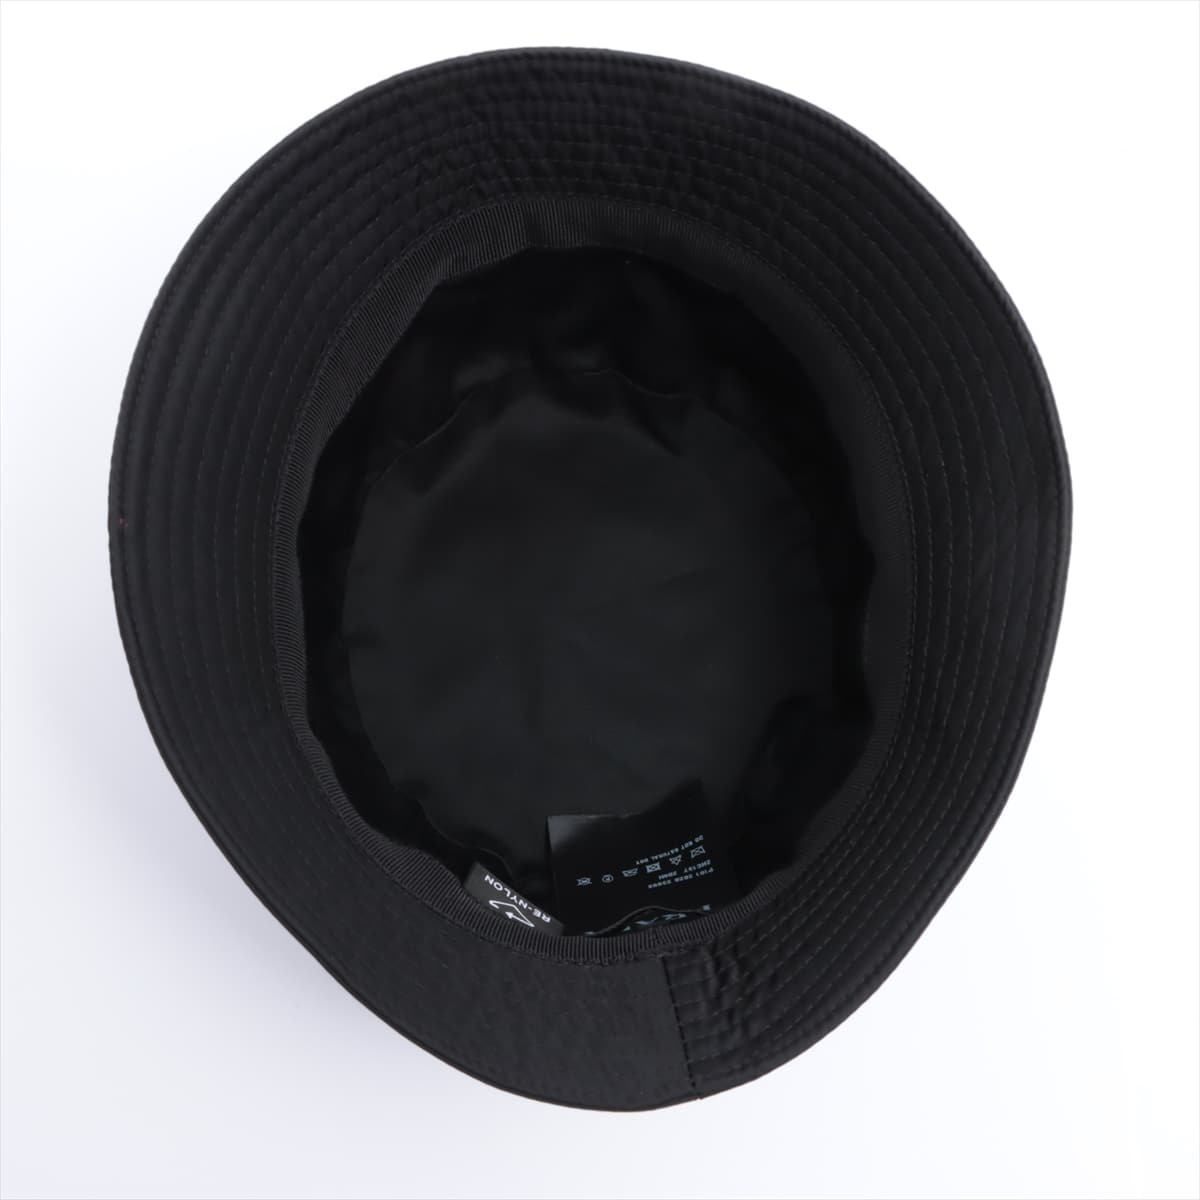 Prada 2HC137 Hat M Nylon Black